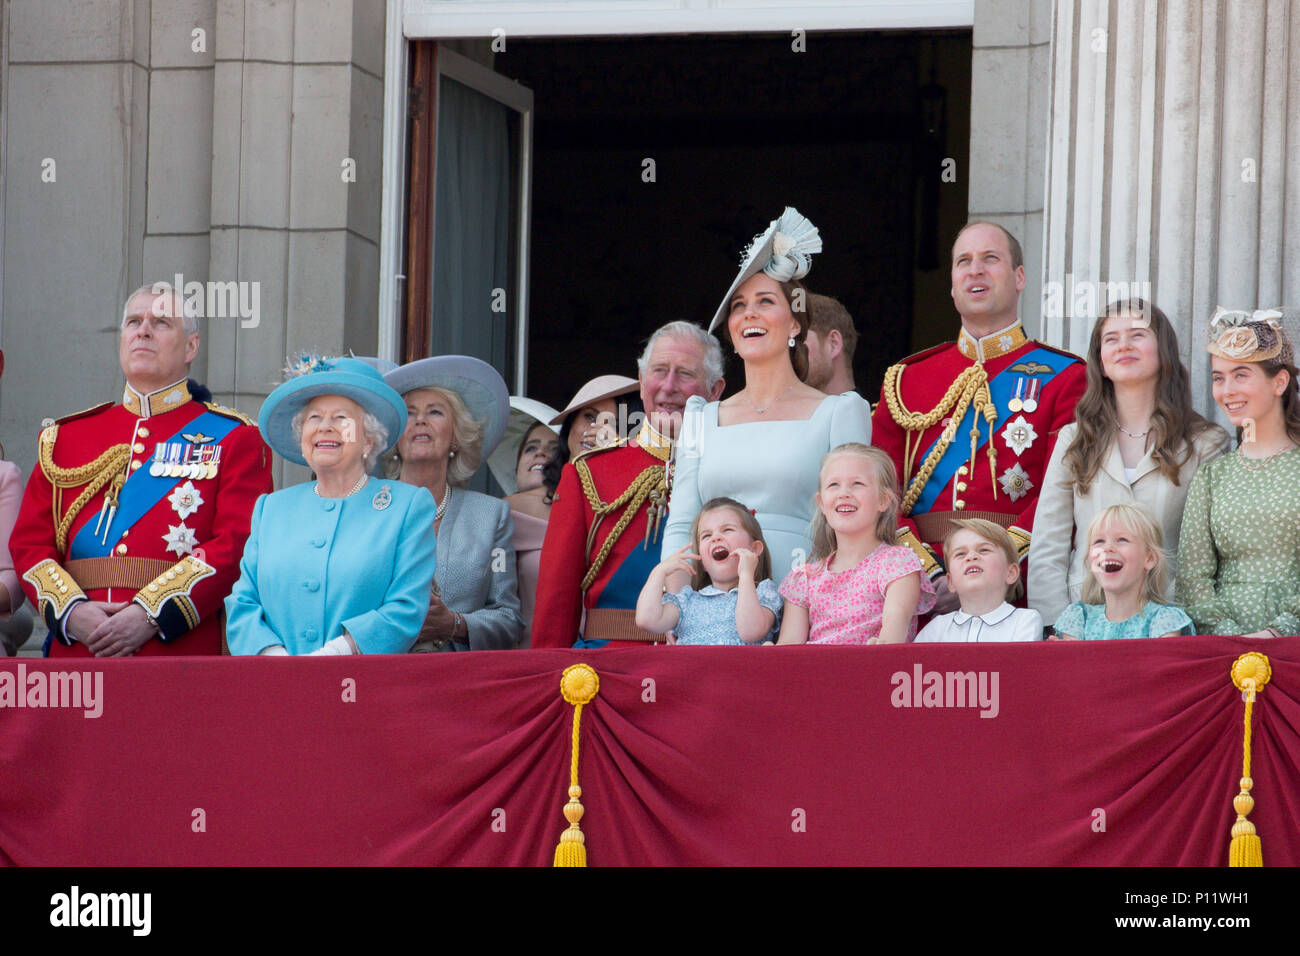 Die königliche Familie an der die Farbe heute in London Trooping. Der Herzog und die Herzogin von Sussex haben die Königin für die die Farbe Parade ihren 92. Geburtstag zu markieren. Drucken Harry und Meghan Markle, der letzten Monat geheiratet, kamen als Teil der Beförderung Prozession. Große Menschenmassen Zuschauer versammelten Samstag Zeremonie, die sah, rund 1.000 Soldaten März auf Horse Guards Parade in Whitehall zu beobachten. Stockfoto